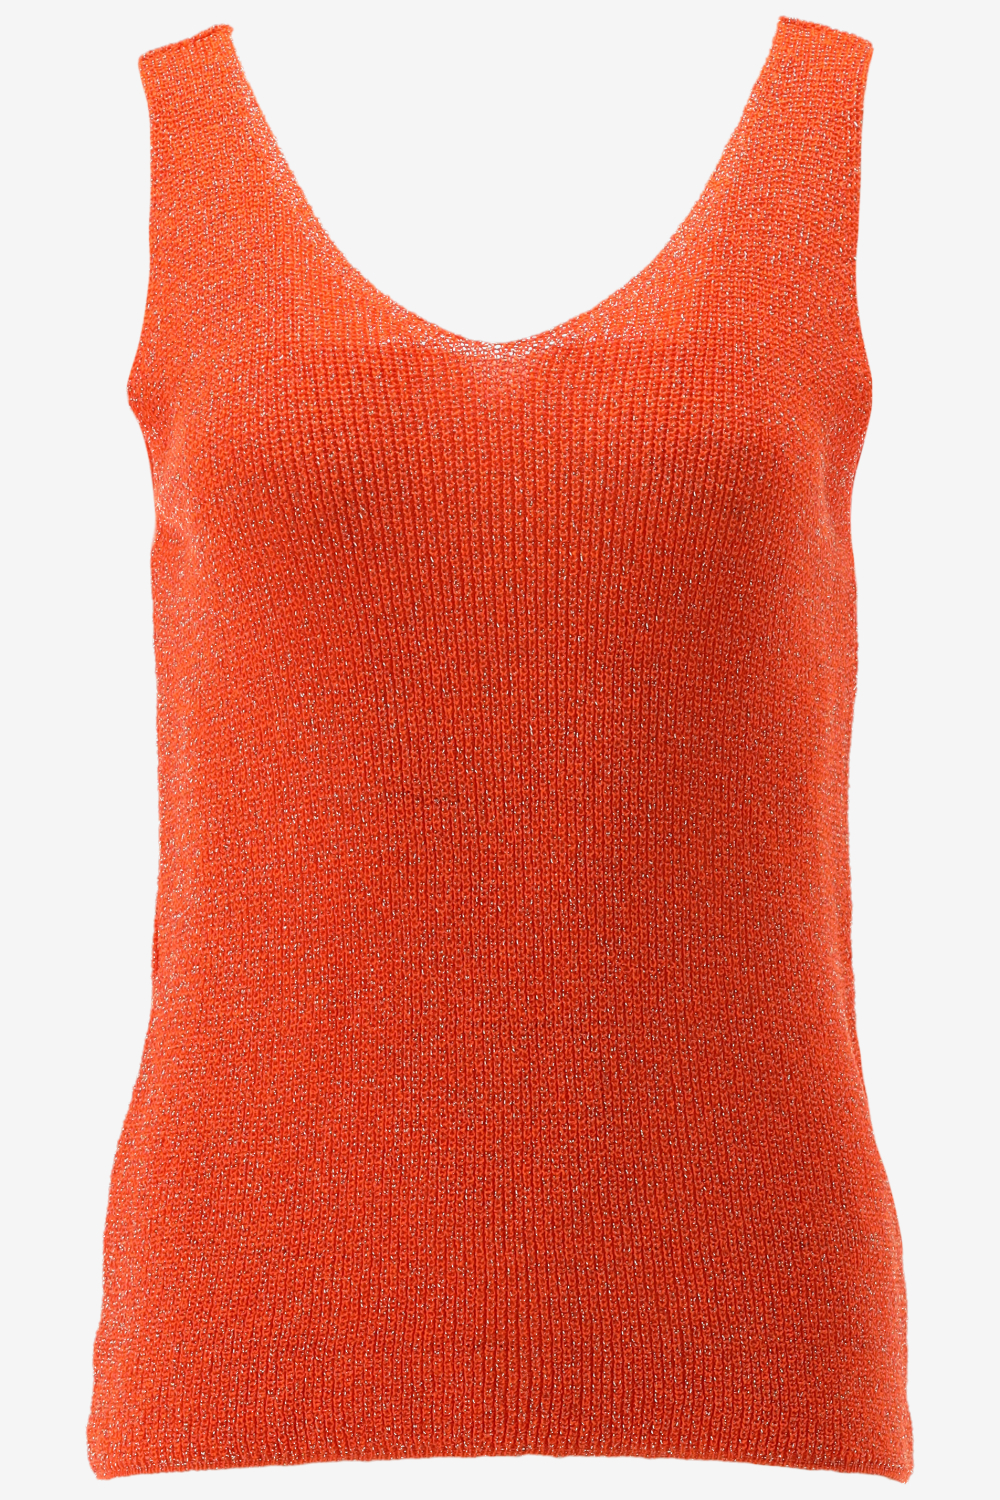 Geisha Singlet Knitted Lurex 34065-70 Orange